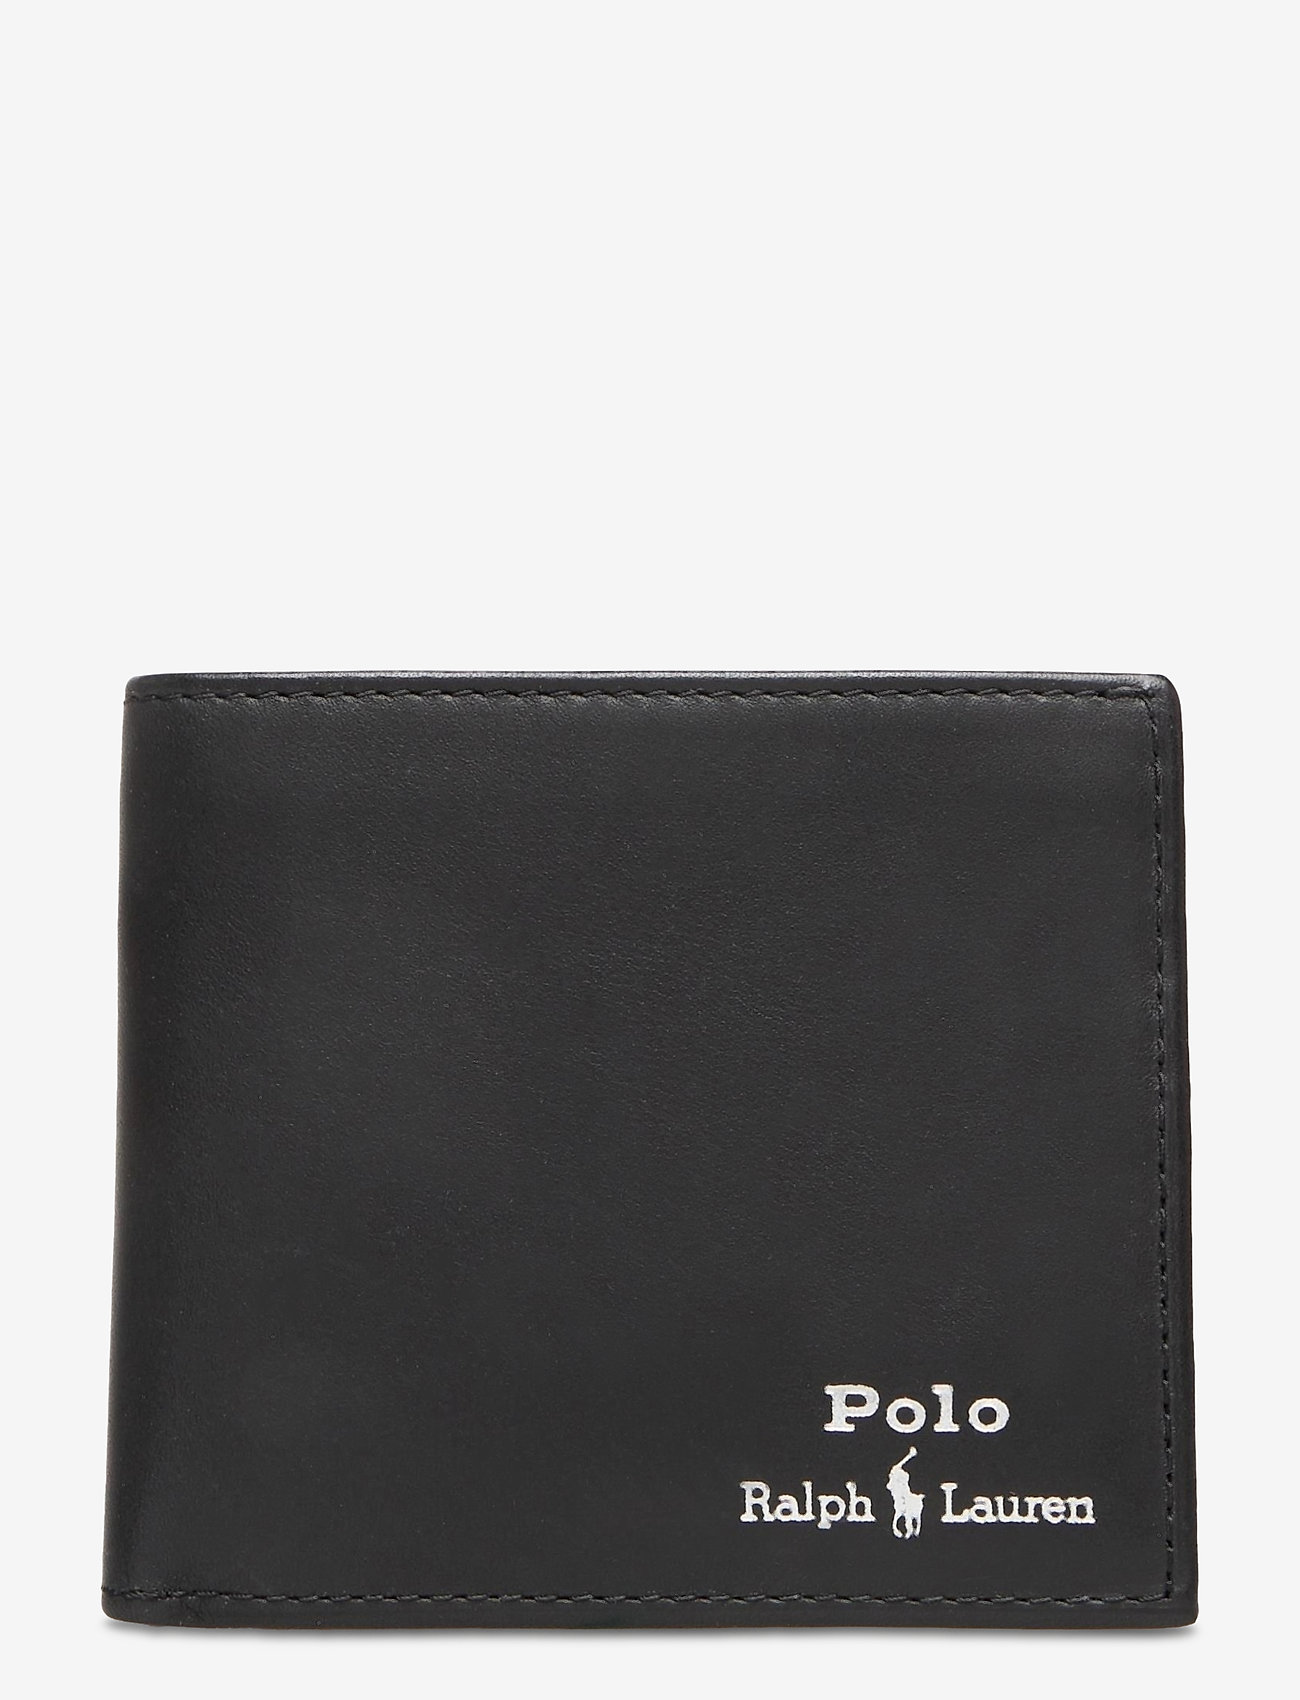 Polo Ralph Lauren Leather Billfold Wallet - Wallets 